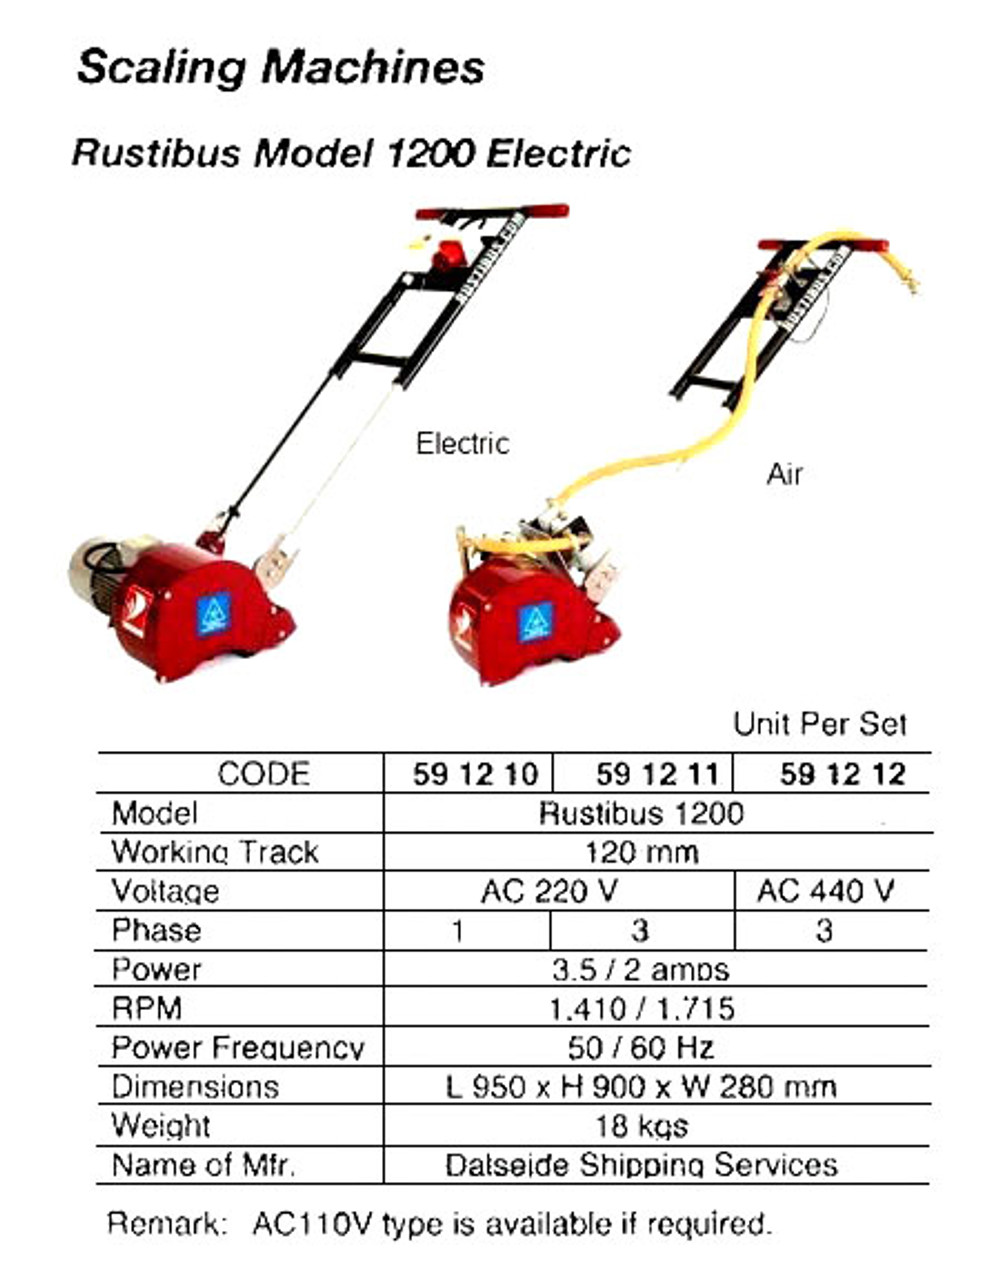 IMPA 591211 Deck scaler electric Rustibus 1200 (220 volt / 3Ph) - NO STOCK